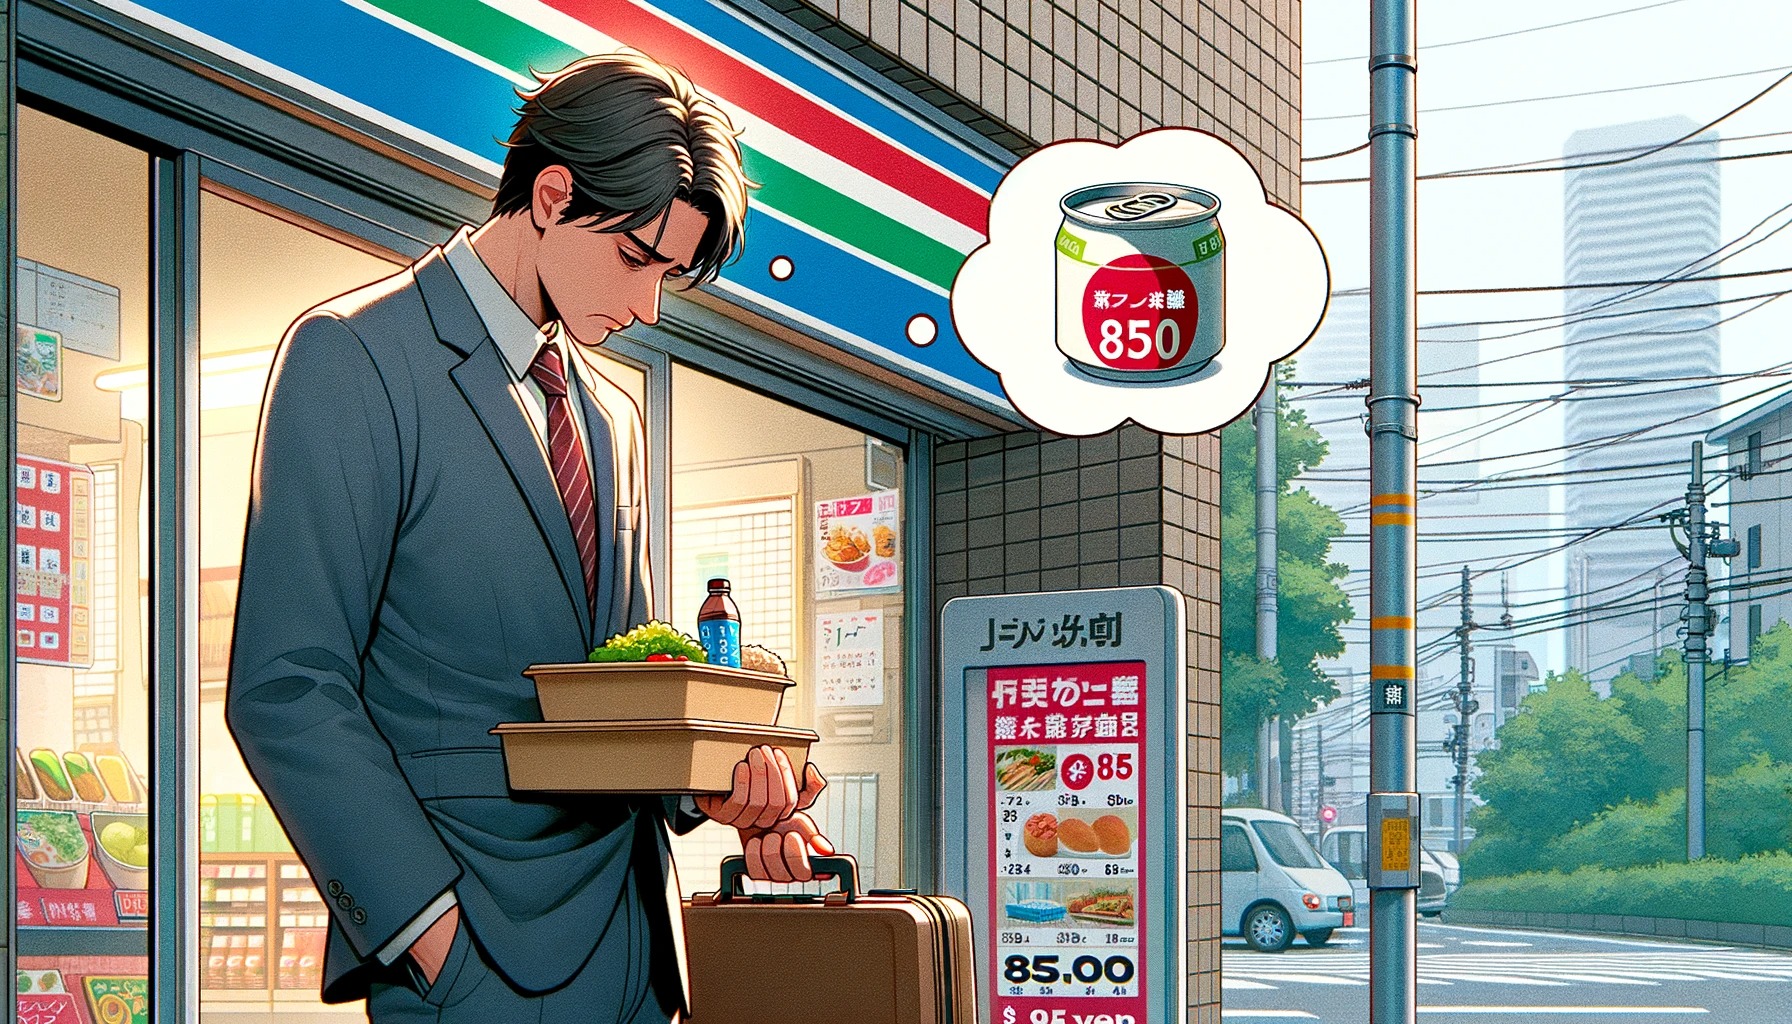 【悲報画像】サラリーマン「コンビニで質素な昼ご飯買ったら850円もした????」